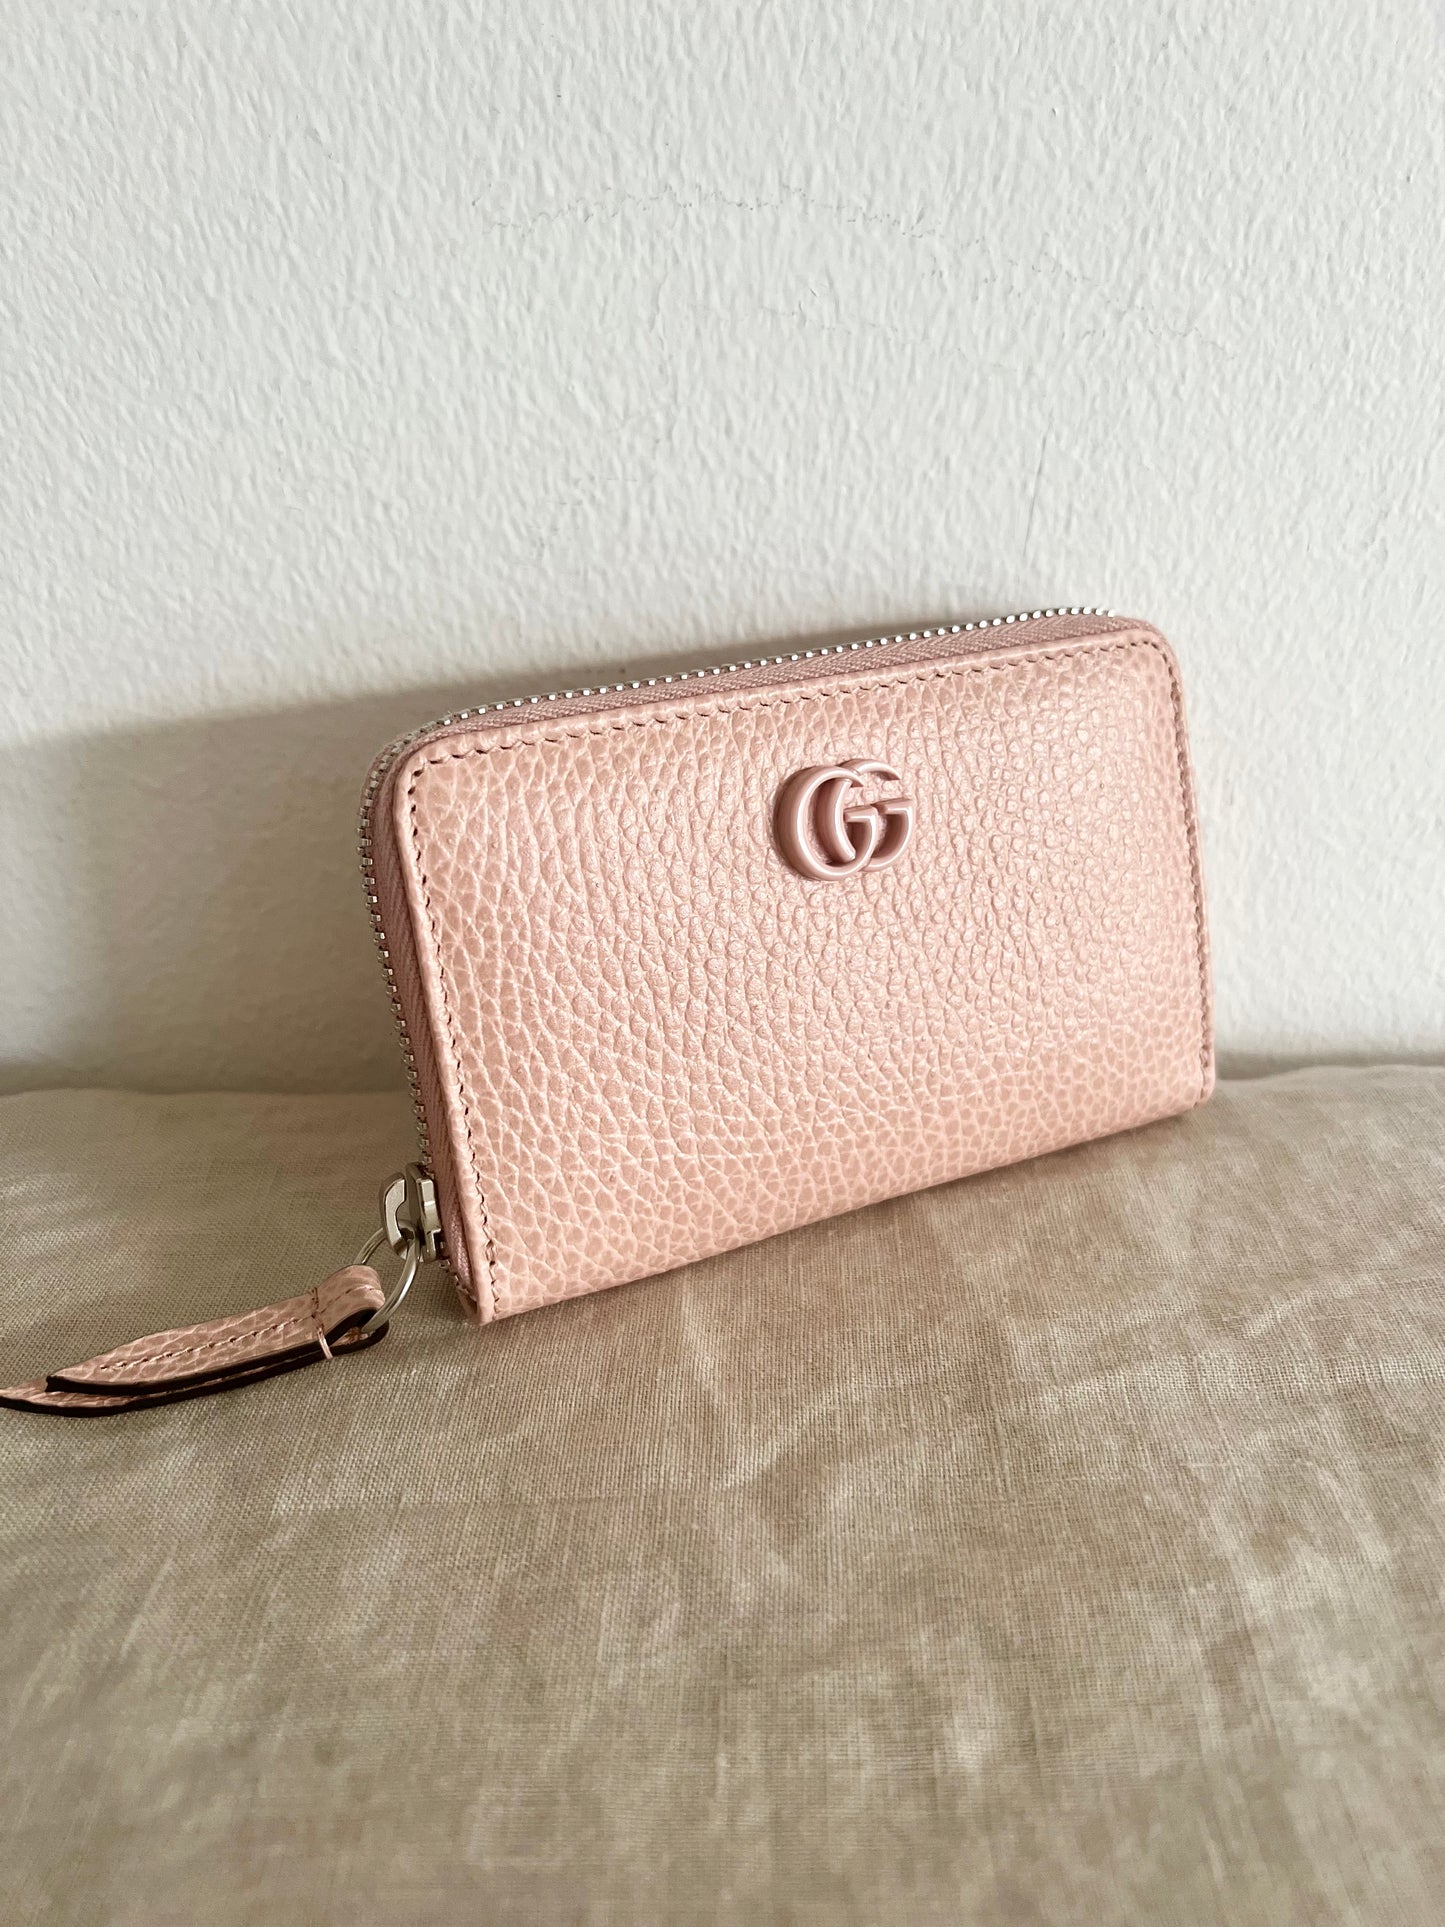 Gucci GG Marmont Zip Around Wallet